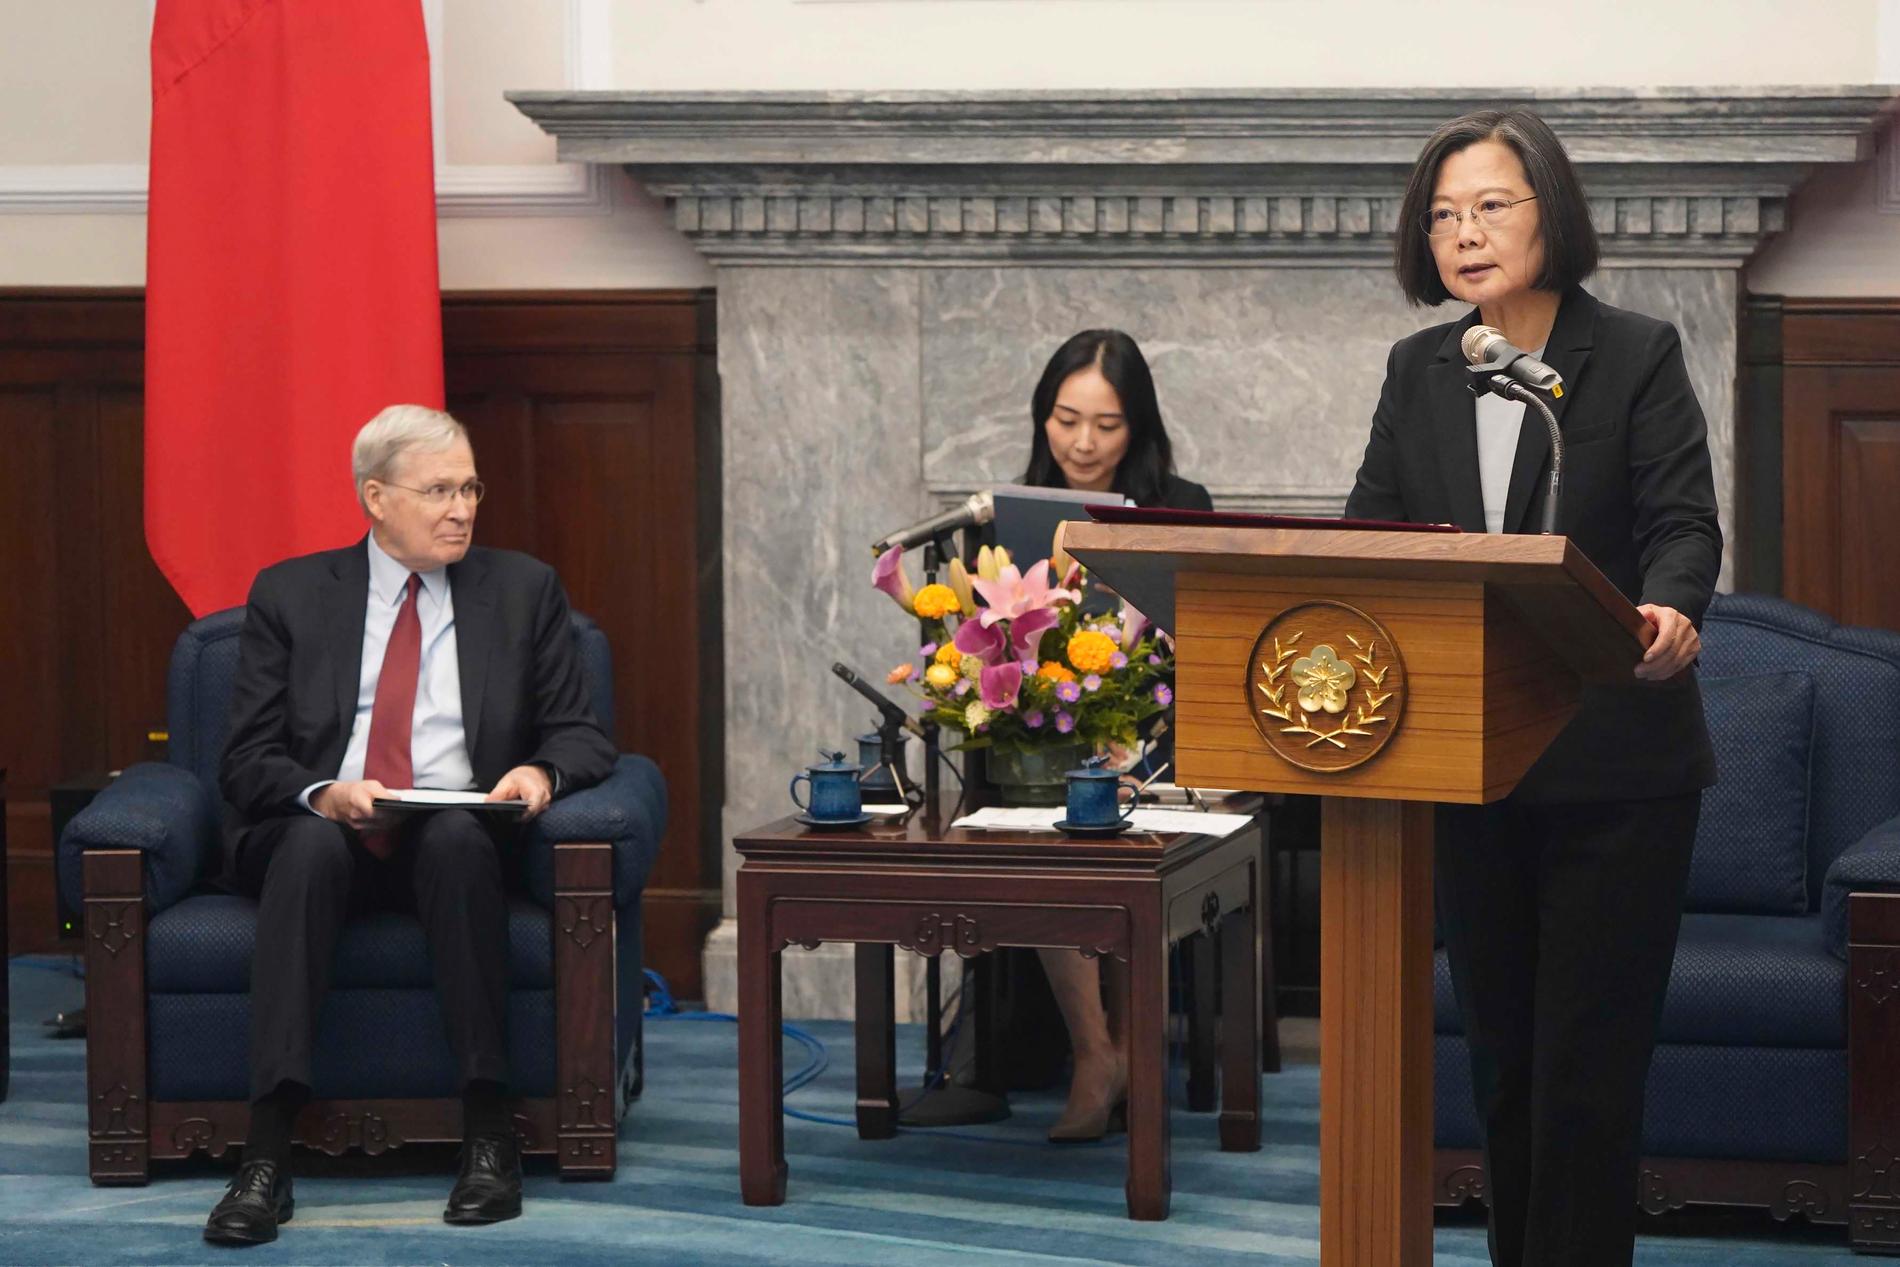 Förre amerikanska säkerhetsrådgivaren Stephen Hadley, till vänster och Taiwans president Tsai Ing-wen i talarstolen under mötet i Taipei.